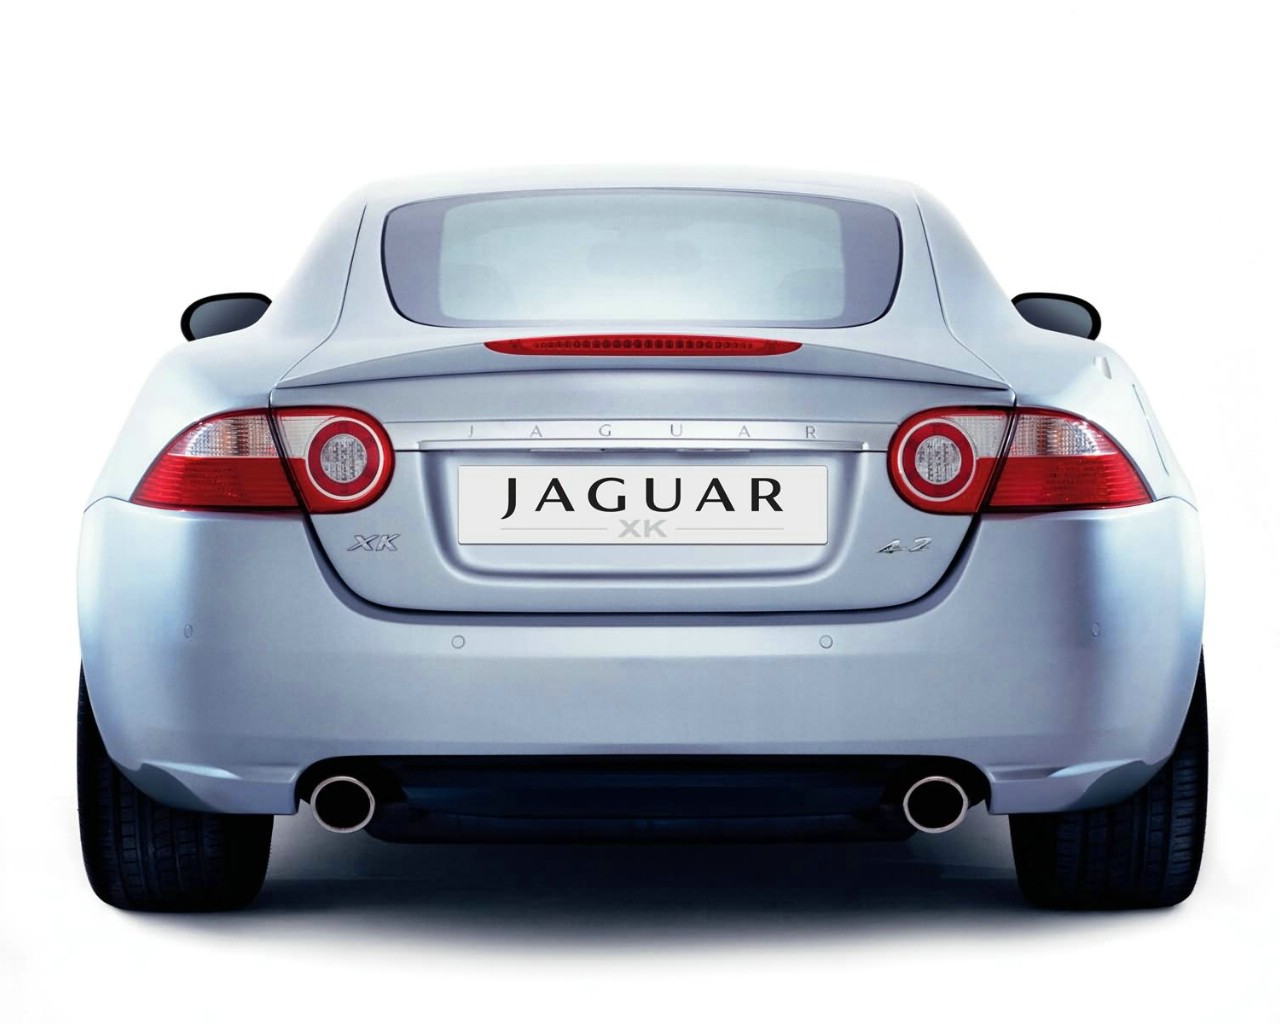 壁纸1280x1024捷豹 Jaguar XK 4 2壁纸 捷豹(Jaguar)XK 4.2壁纸 捷豹(Jaguar)XK 4.2图片 捷豹(Jaguar)XK 4.2素材 汽车壁纸 汽车图库 汽车图片素材桌面壁纸